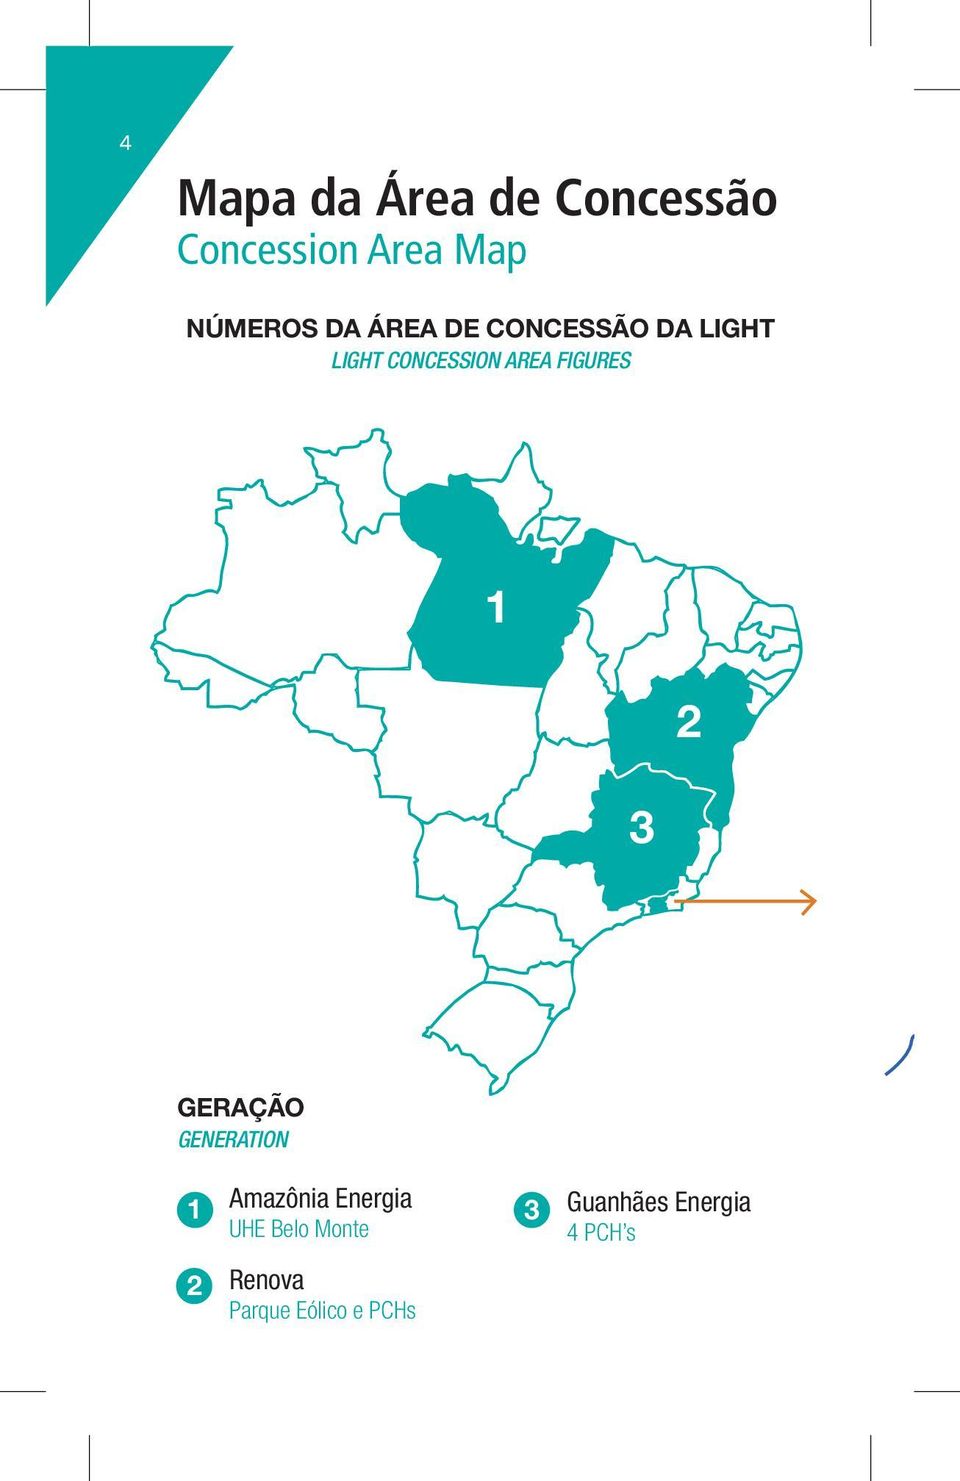 FIGURES 1 3 2 GERAÇÃO Generation 1 Amazônia Energia UHE